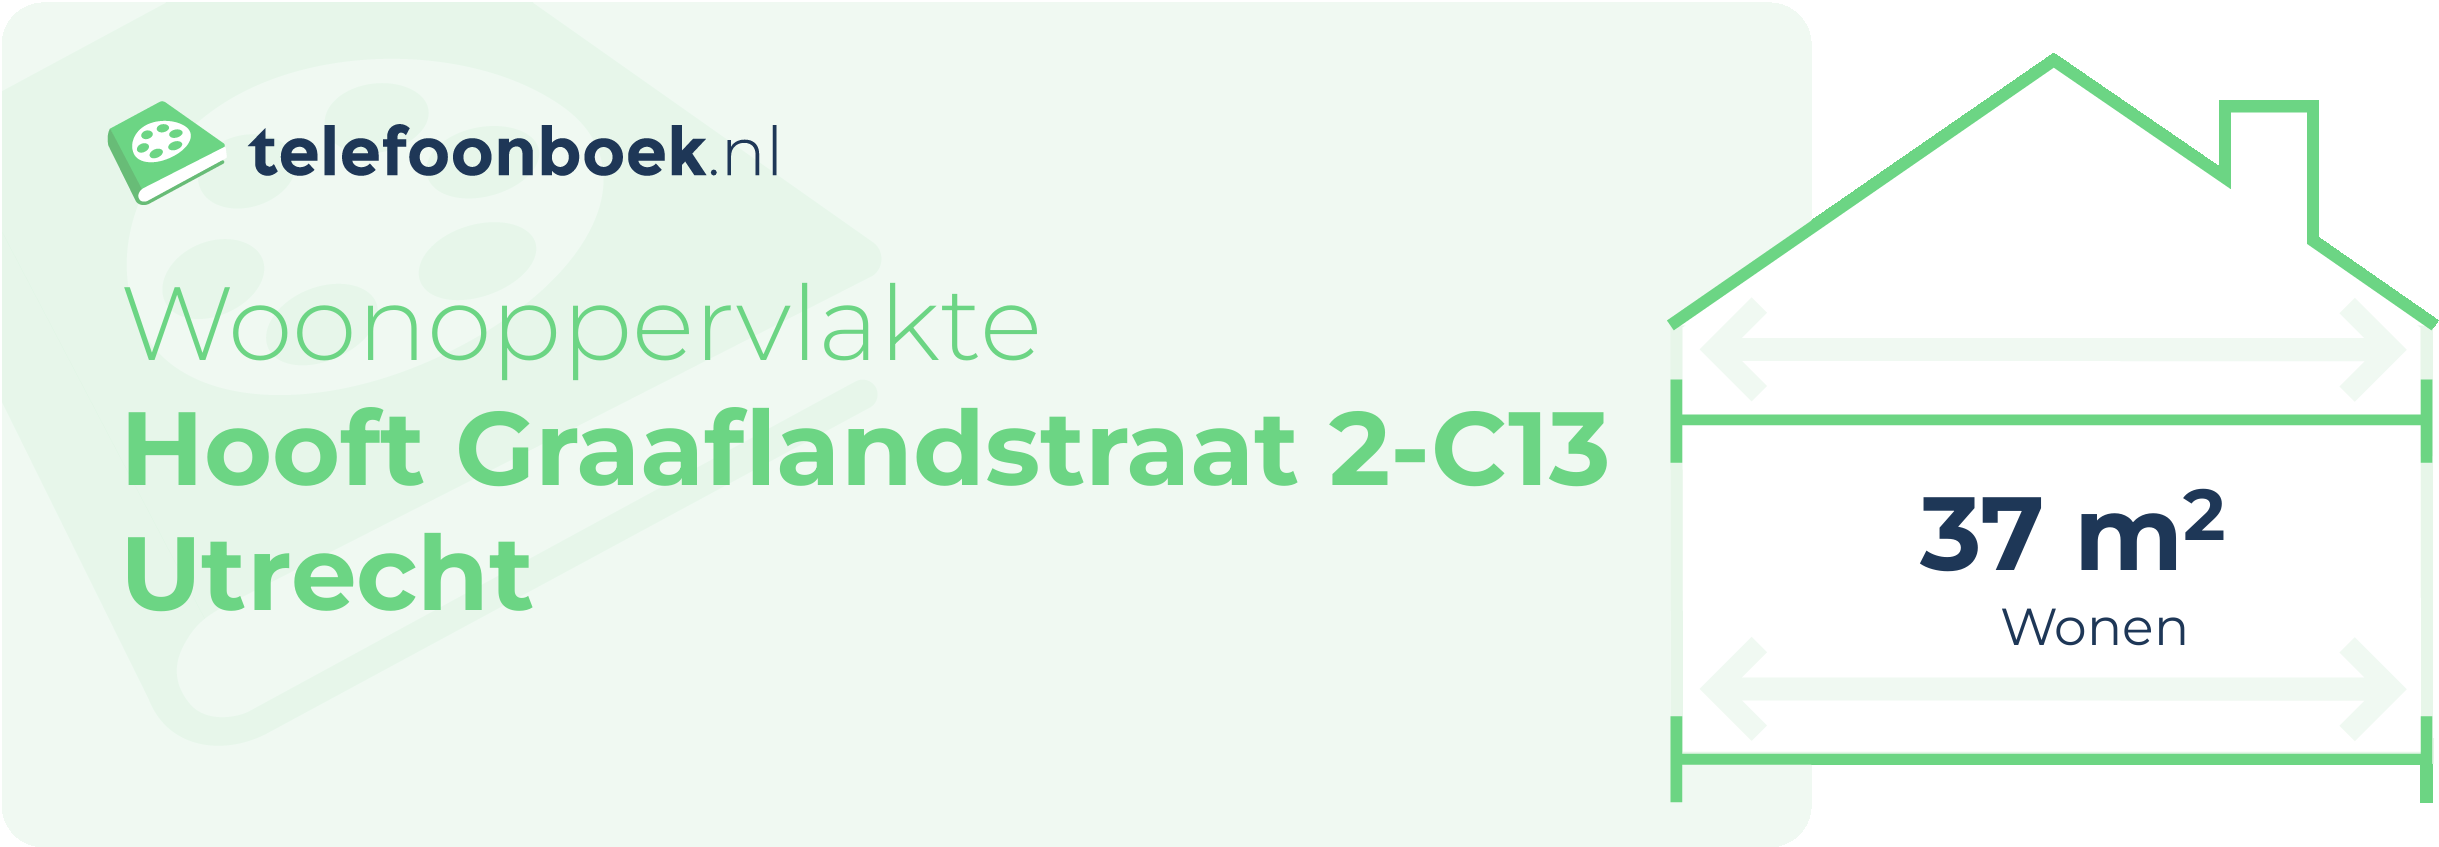 Woonoppervlakte Hooft Graaflandstraat 2-C13 Utrecht